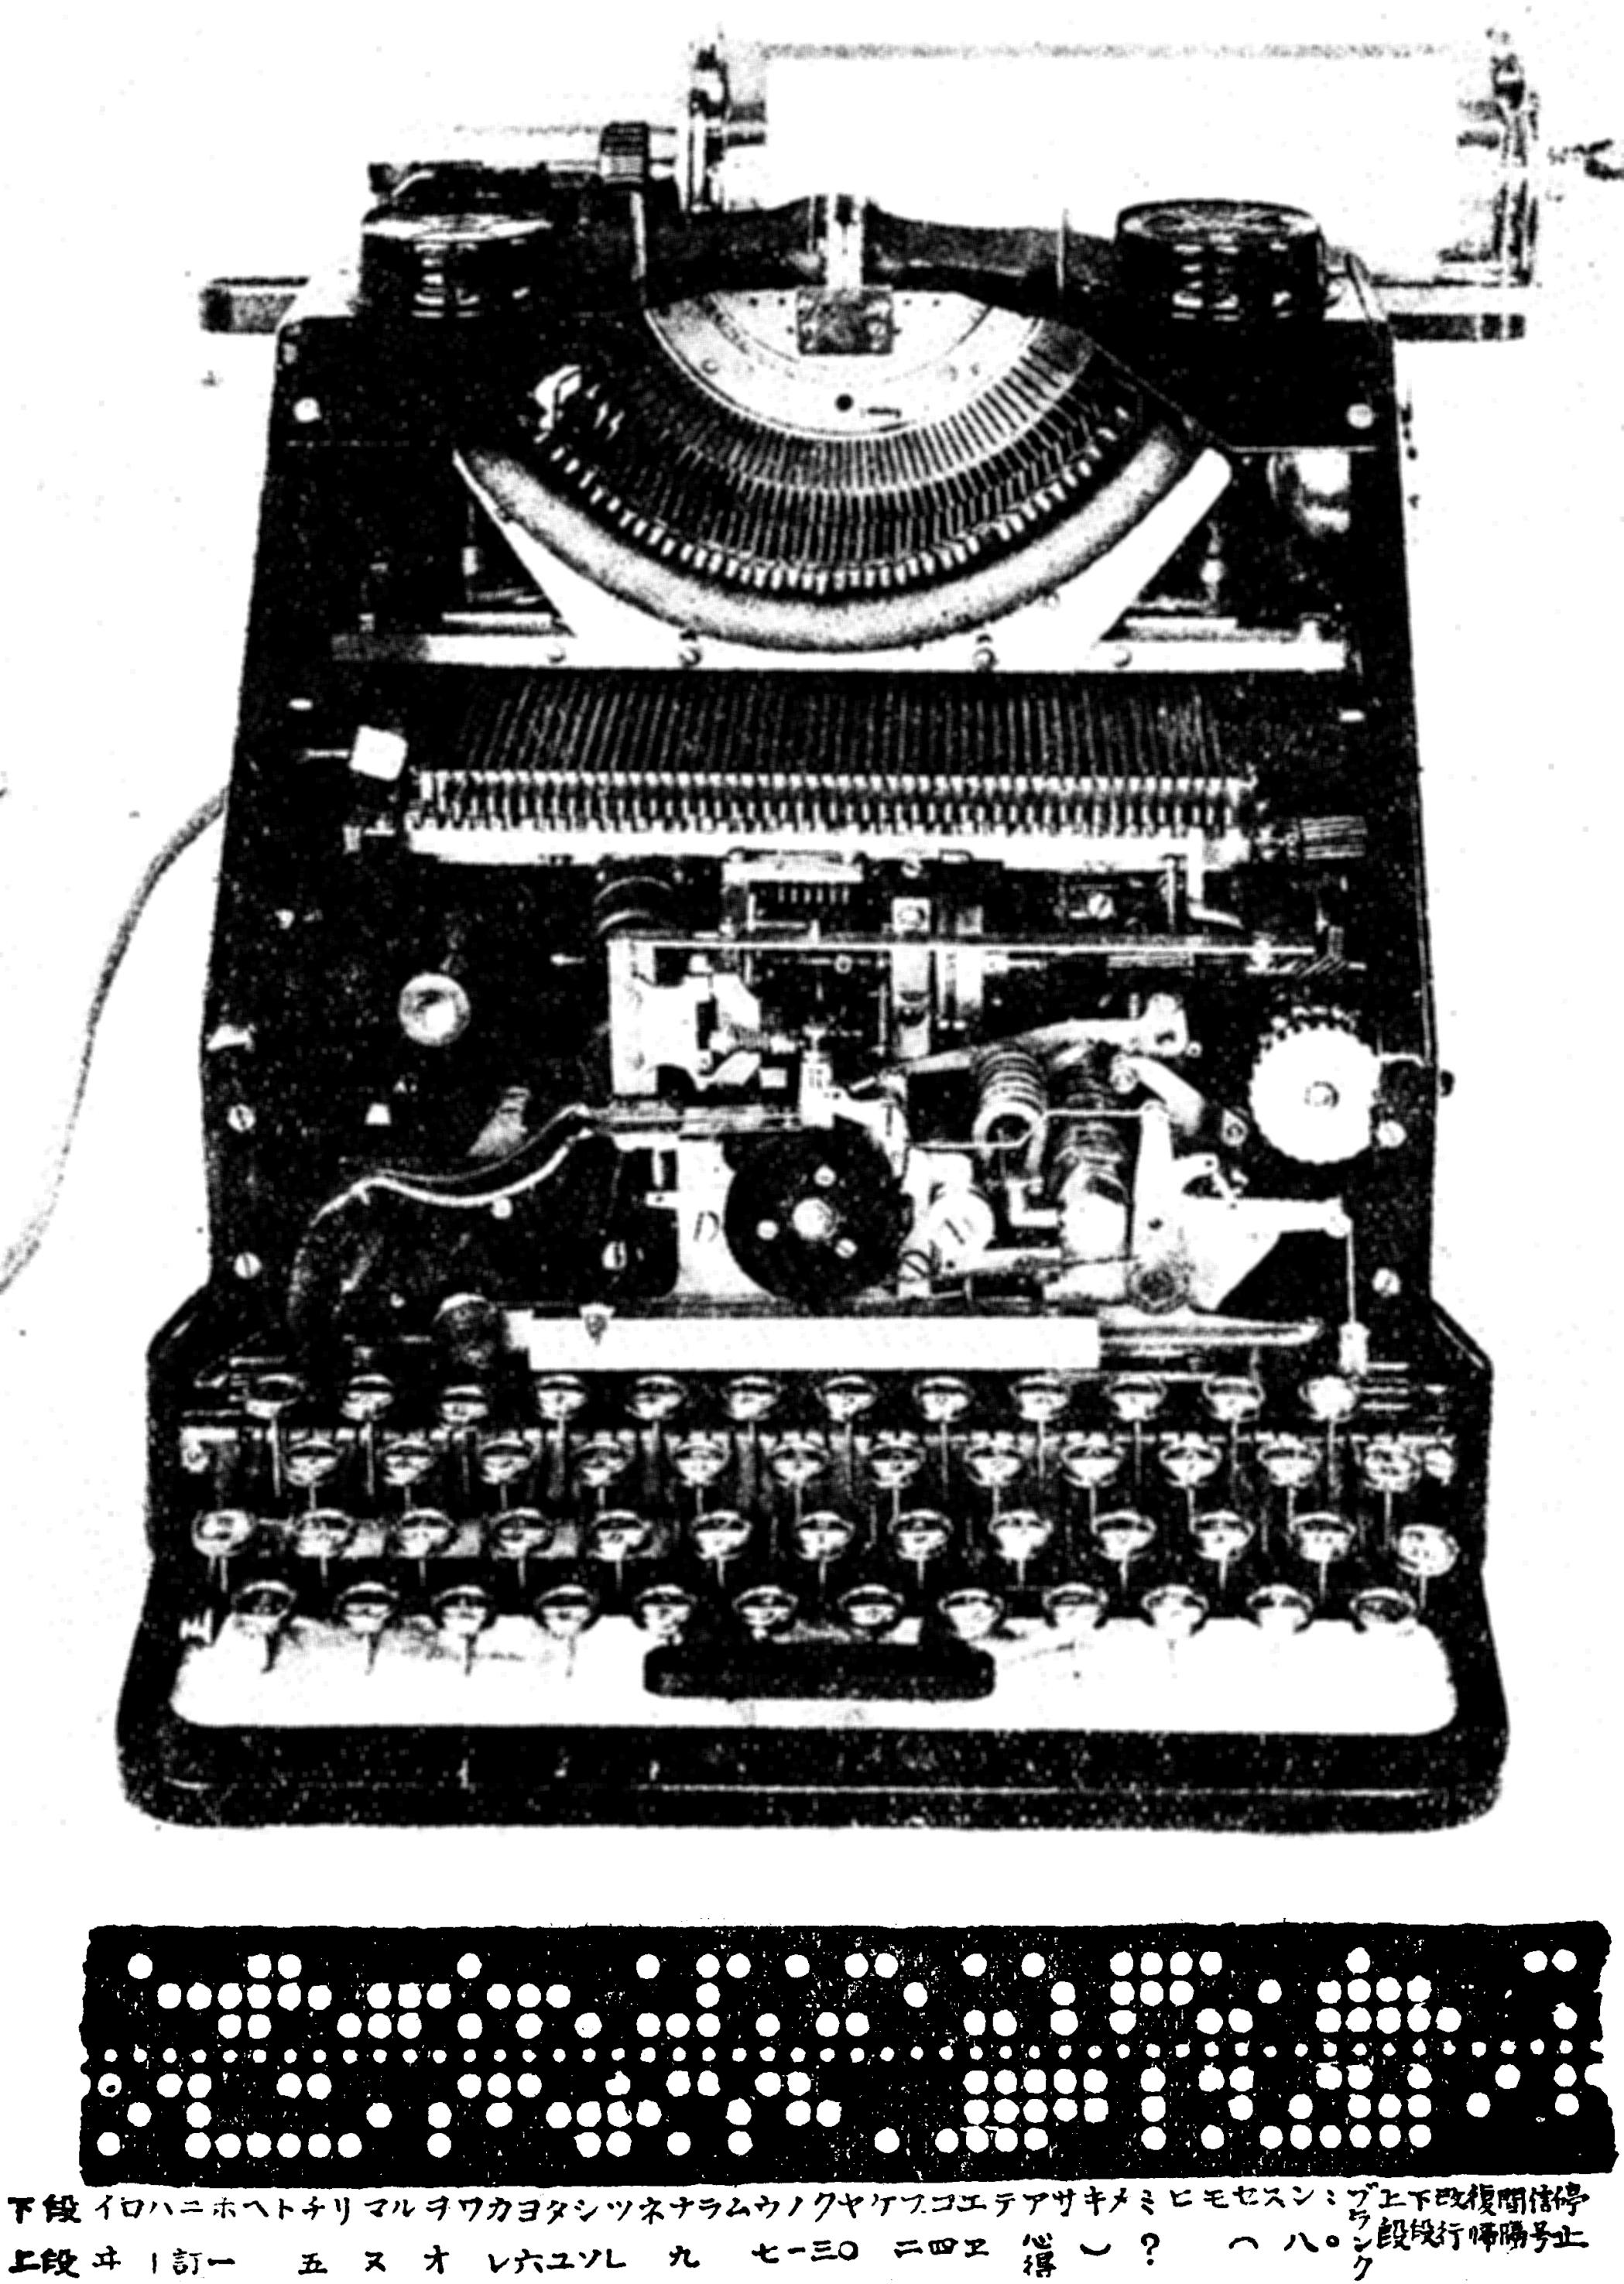 モークラム・クラインシュミット社の「和文印刷電信機」と6穴の鑽孔テープ